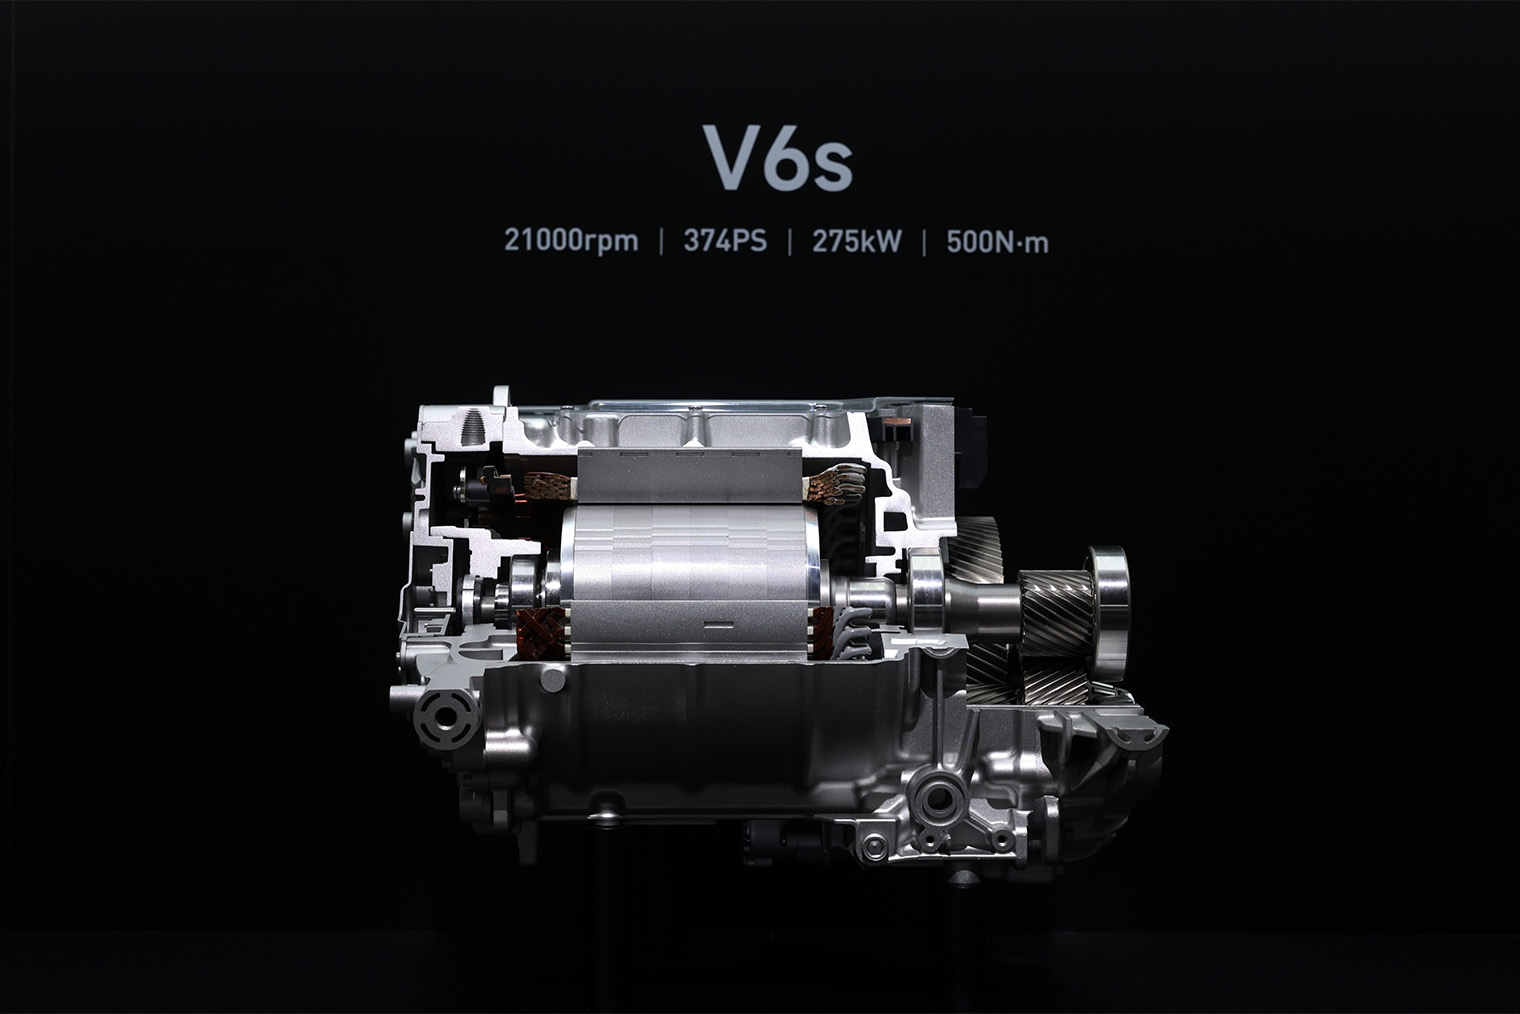 Двигатель Hyper engine V6s. Устанавливается на версии Xiaomi SU7 Pro. В топовой SU7 использованы V6 и V6s на разных осях. Источник: Lei Jun (CEO Xiaomi) / X